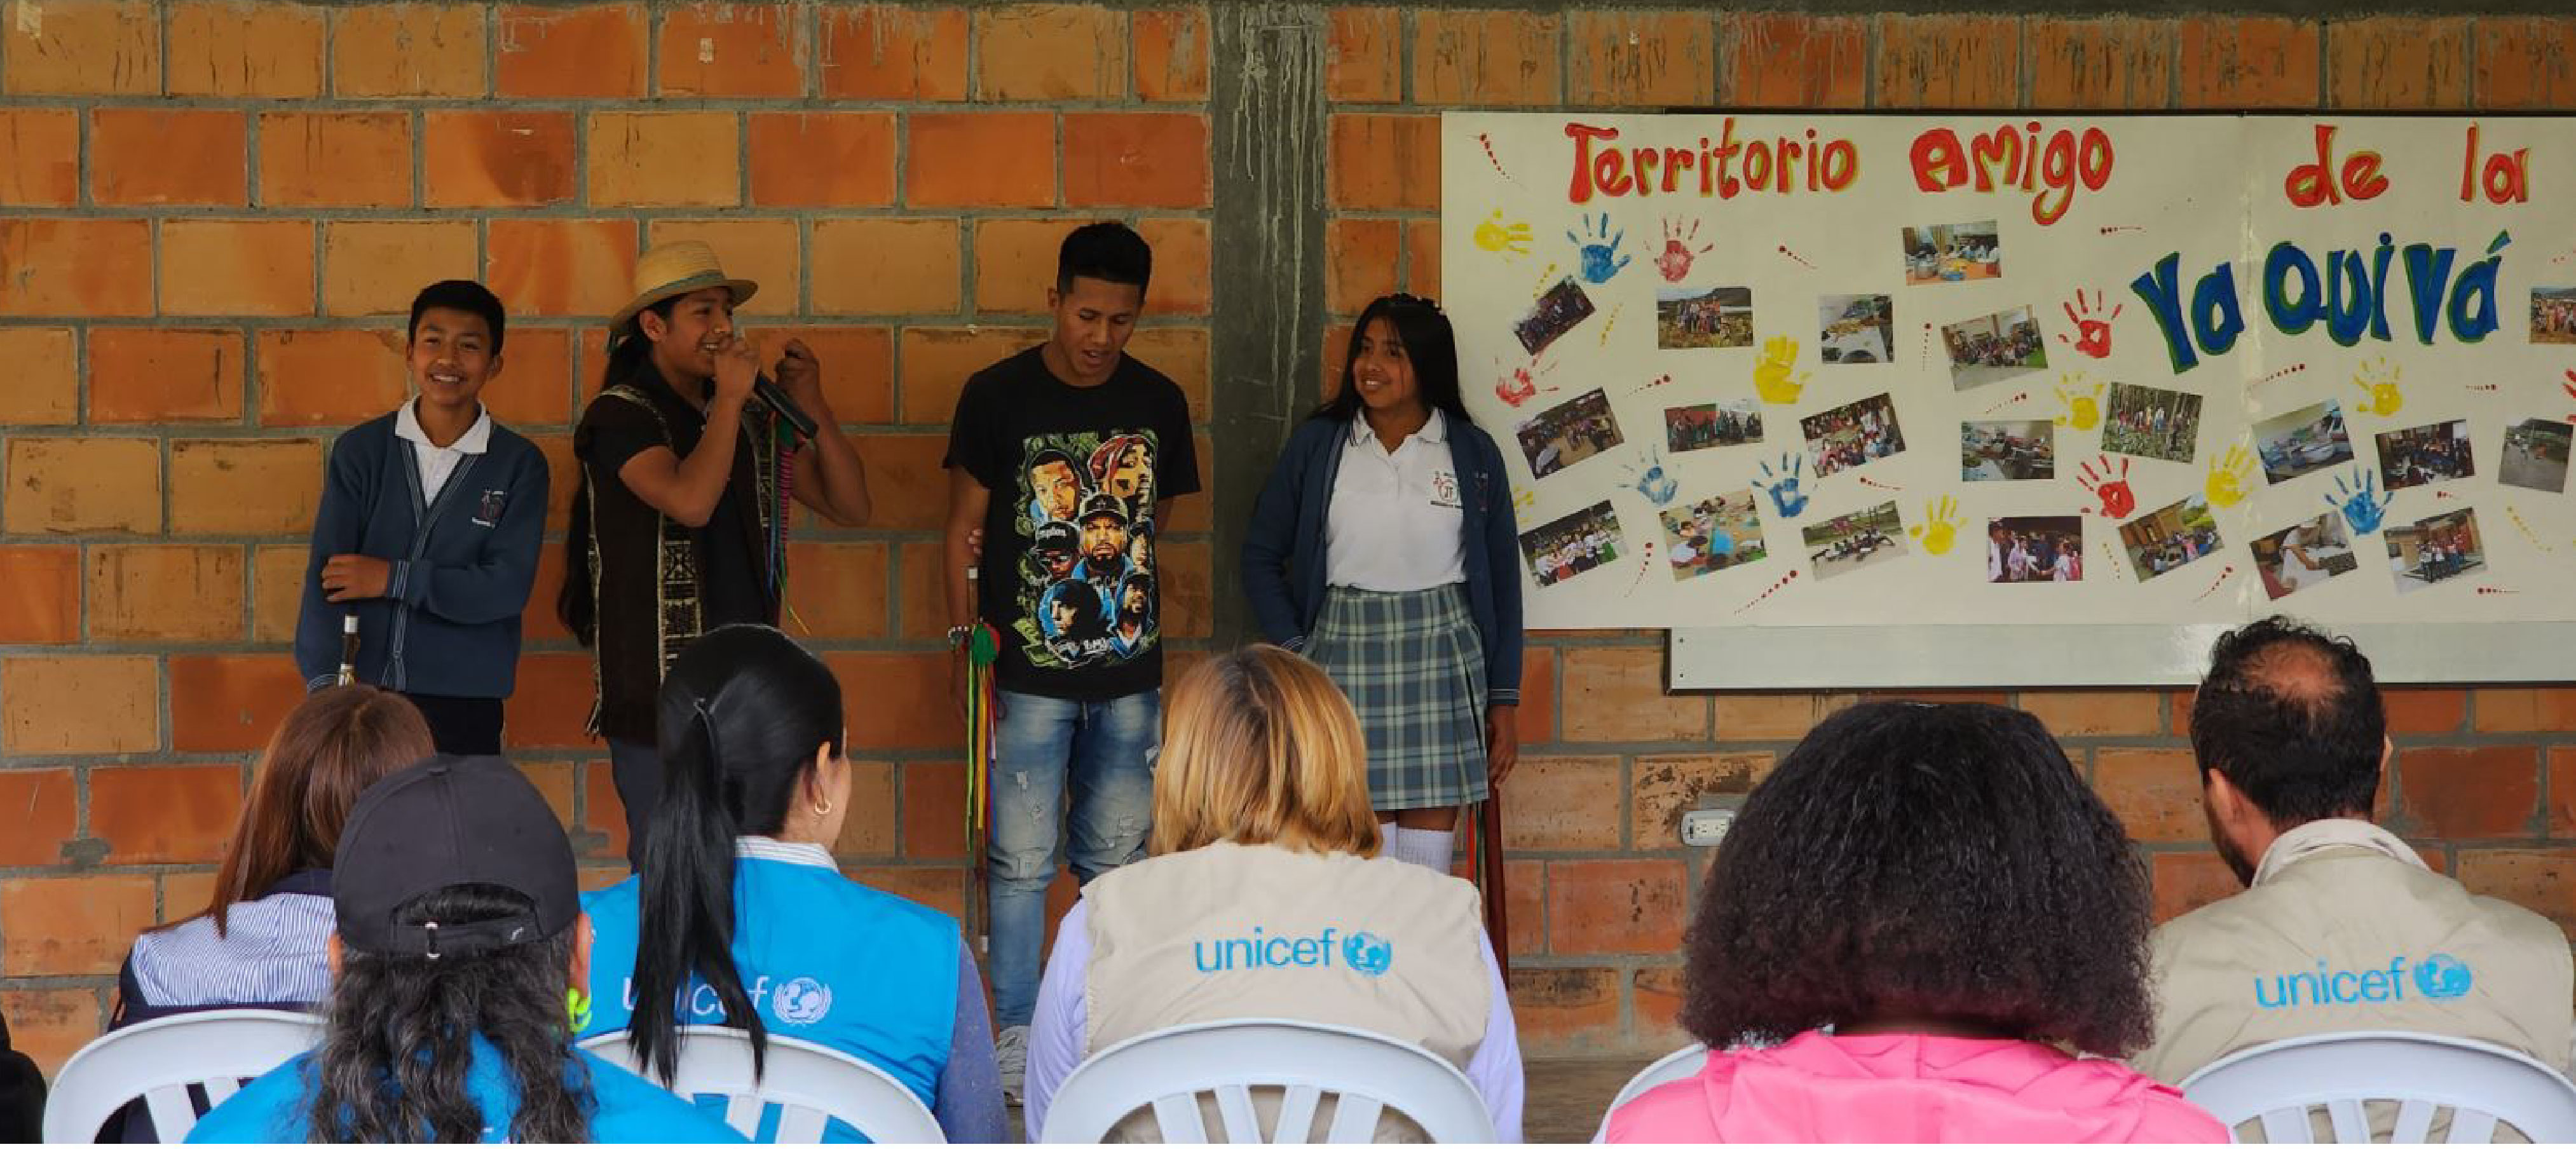 Participantes Col-Col en el marco de la visita al resguardo indígena Ya Quivá 